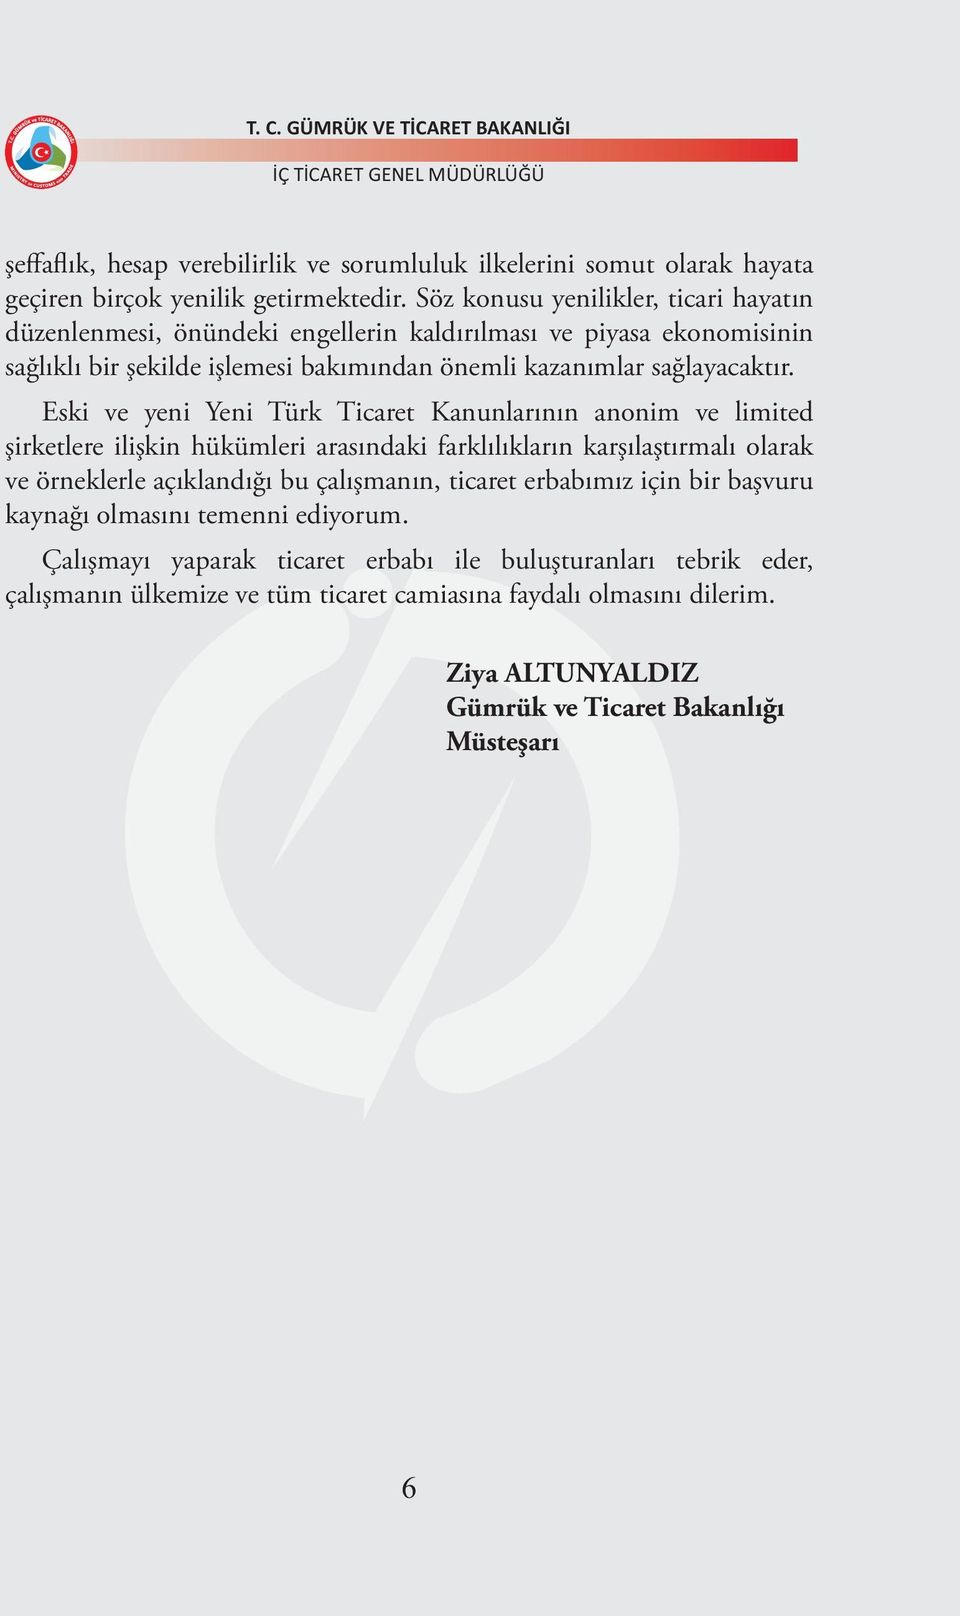 Eski ve yeni Yeni Türk Ticaret Kanunlarının anonim ve limited şirketlere ilişkin hükümleri arasındaki farklılıkların karşılaştırmalı olarak ve örneklerle açıklandığı bu çalışmanın,